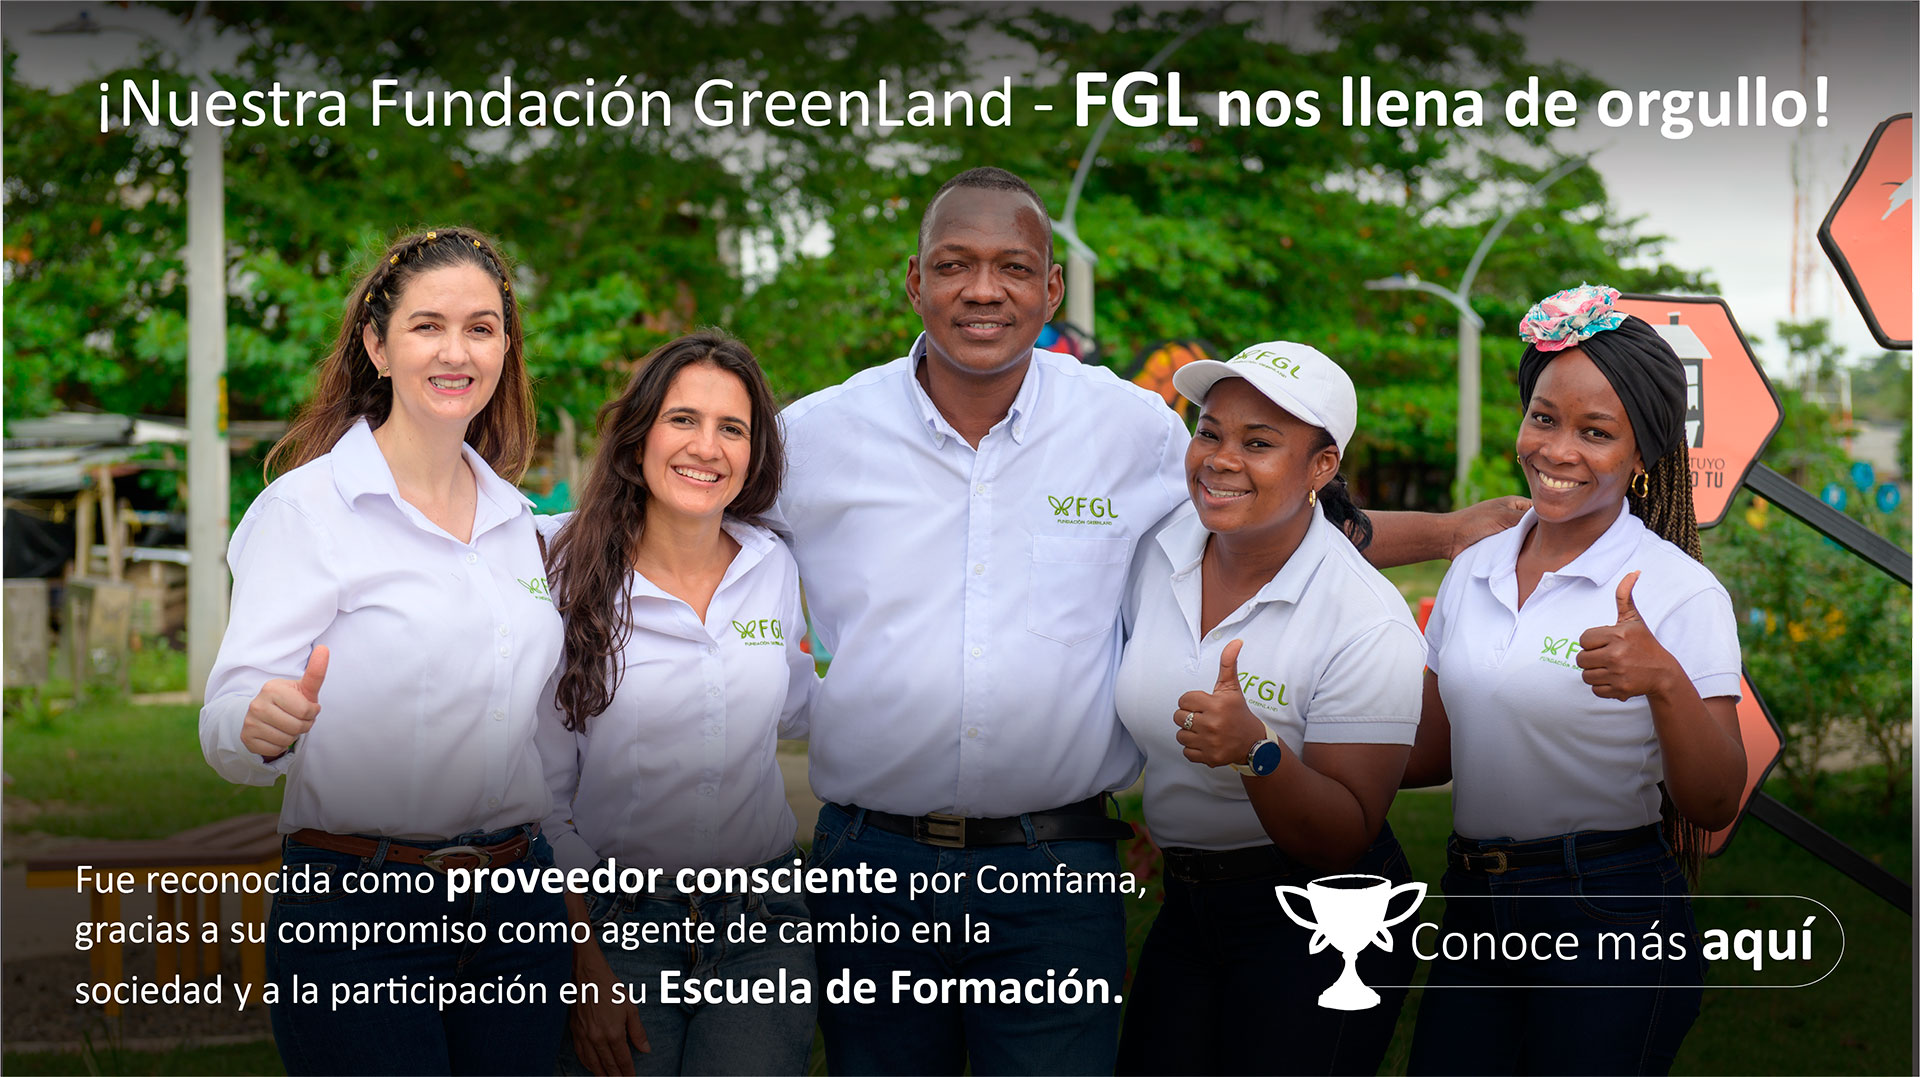 ¡Nuestra Fundación GreenLand - FGL nos llena de orgullo!